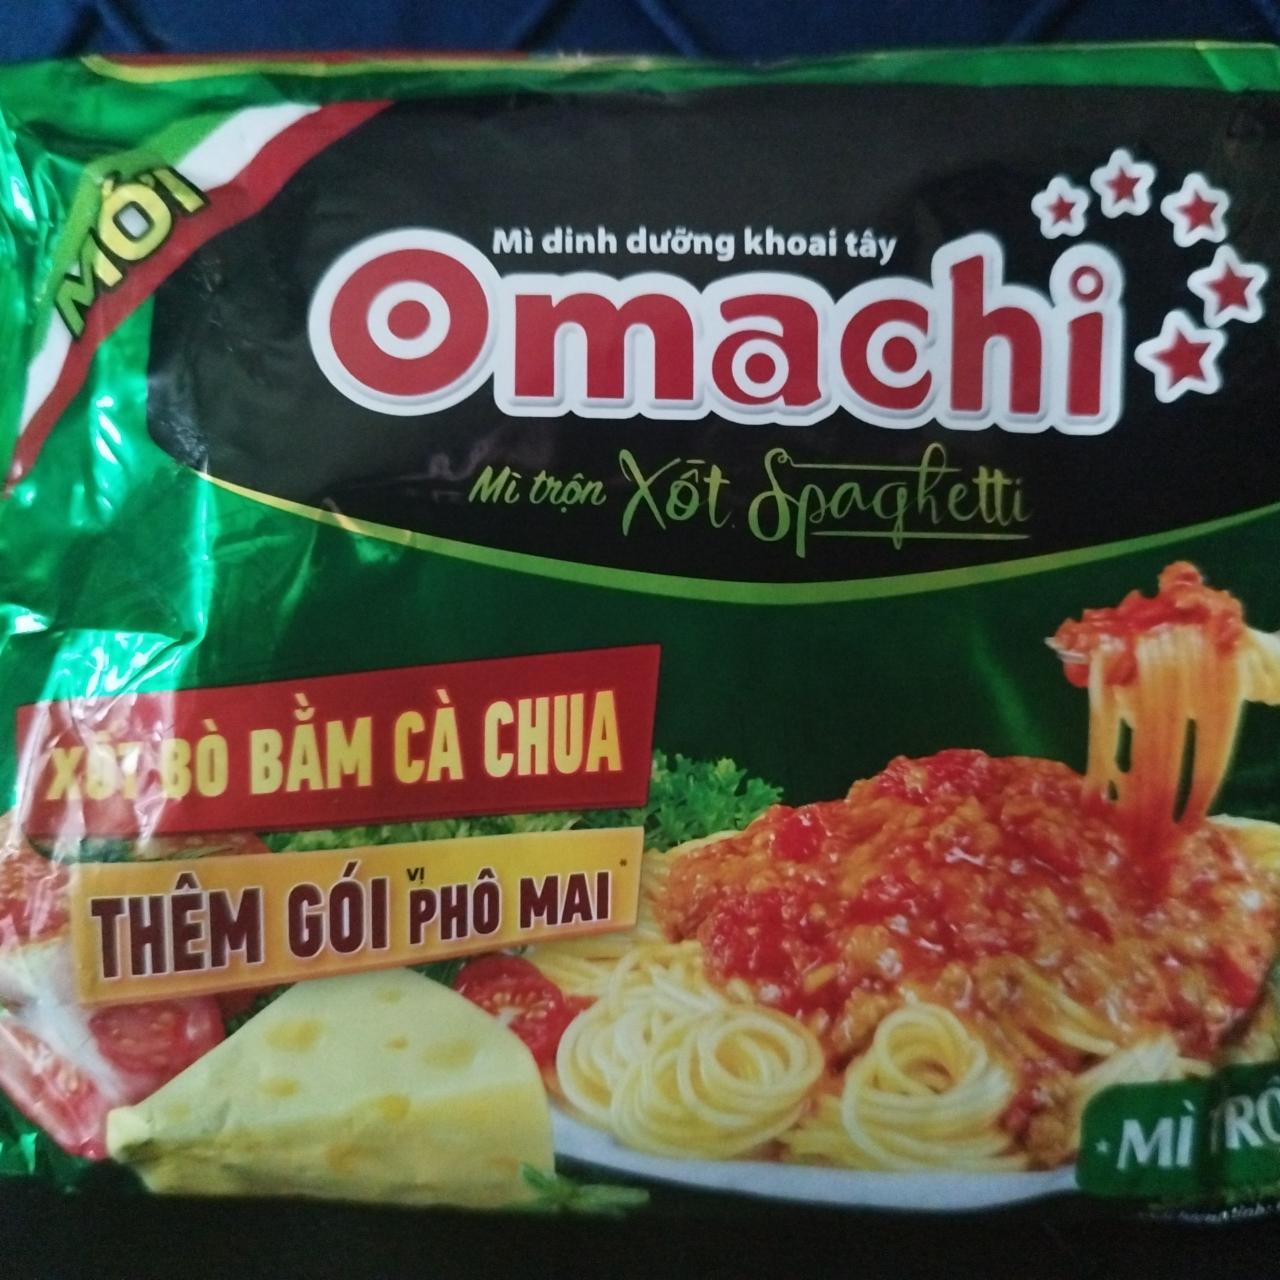 Fotografie - Mì trộn xốt Spaghetti Omachi